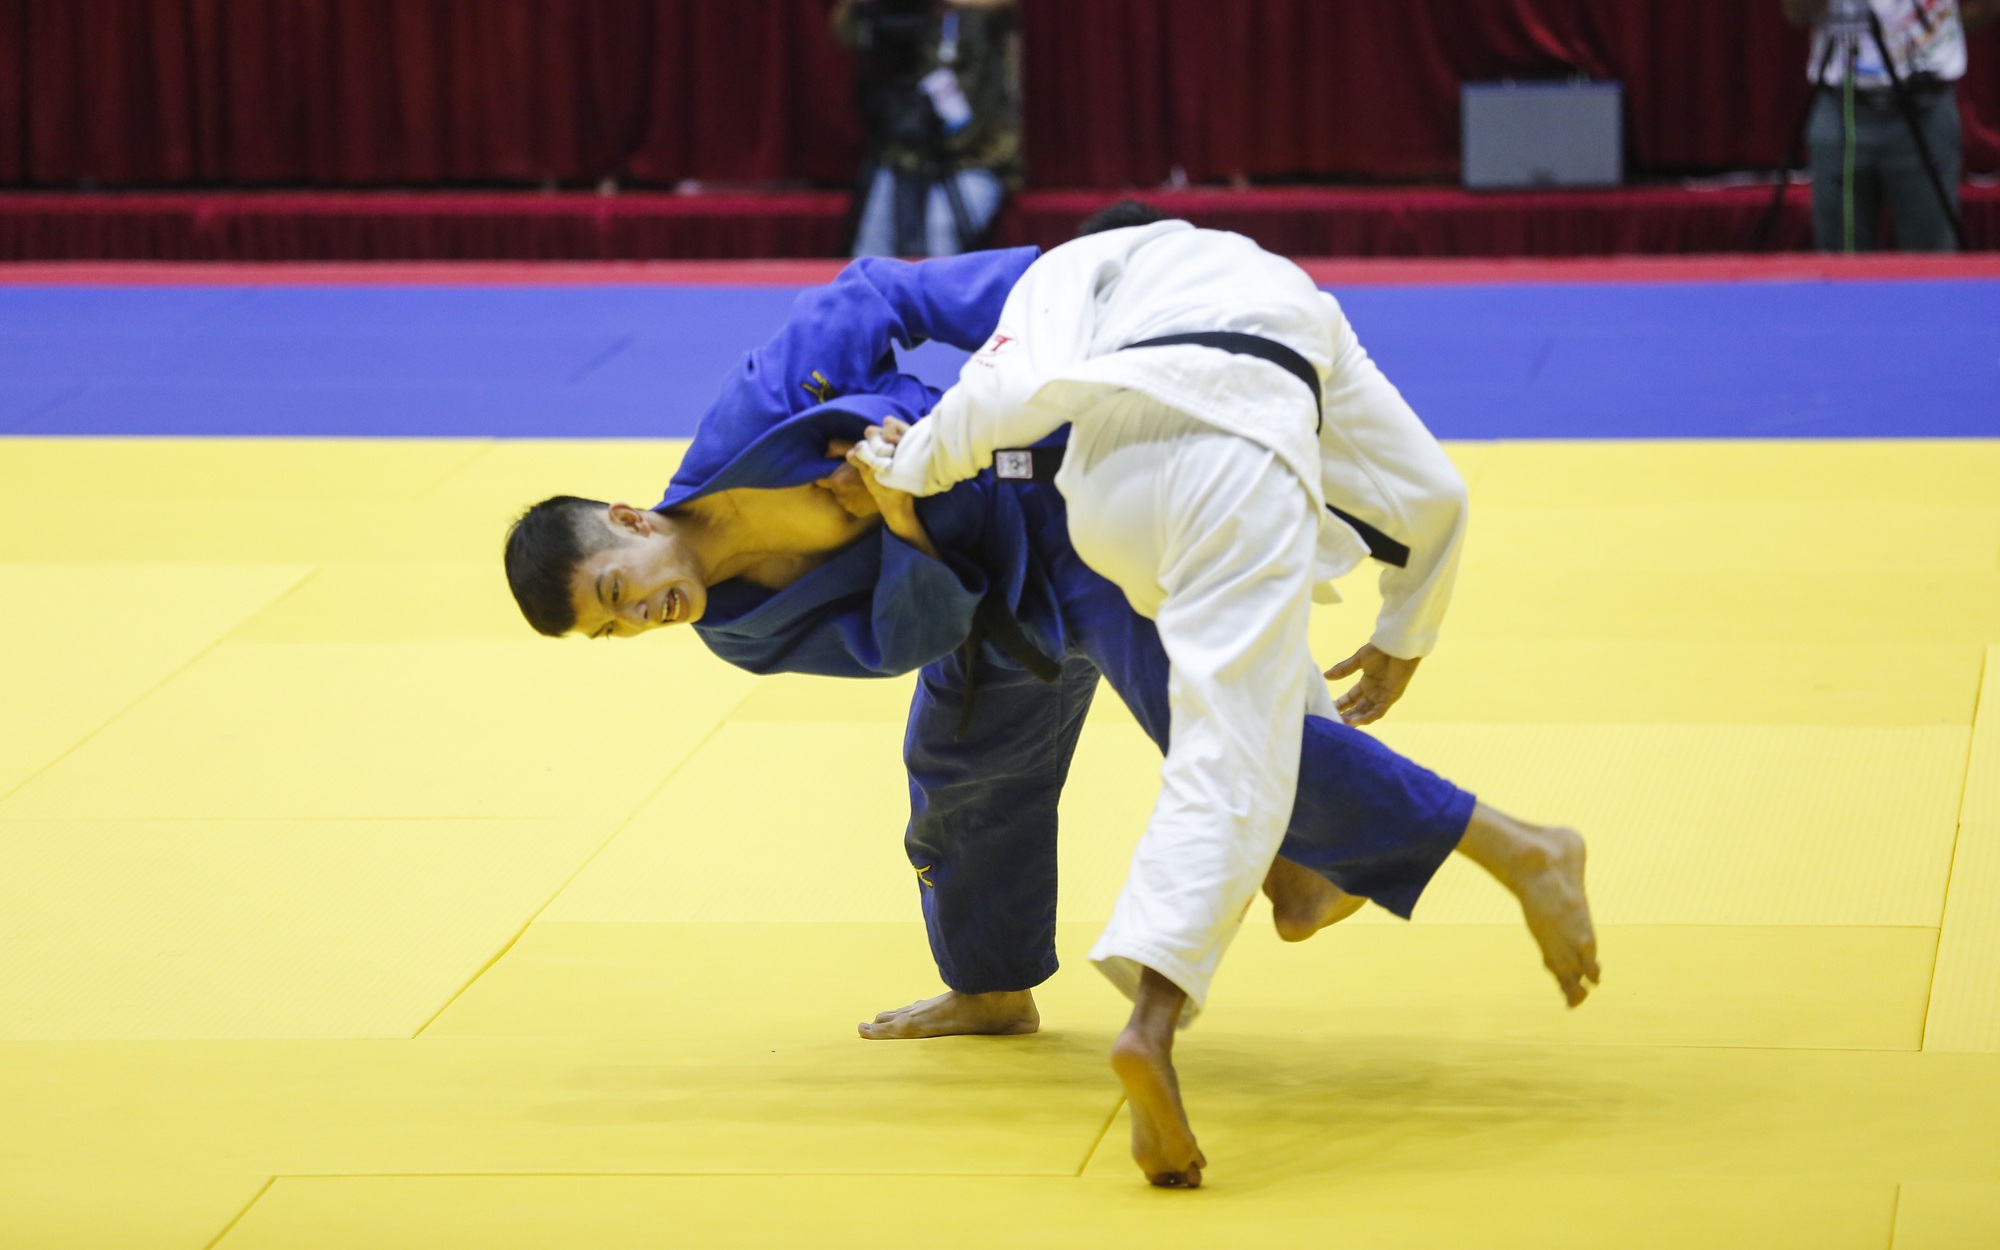 Võ sĩ Judo Việt Nam khóa chặt đối thủ và giành chiến thắng bằng luật bàn thắng vàng